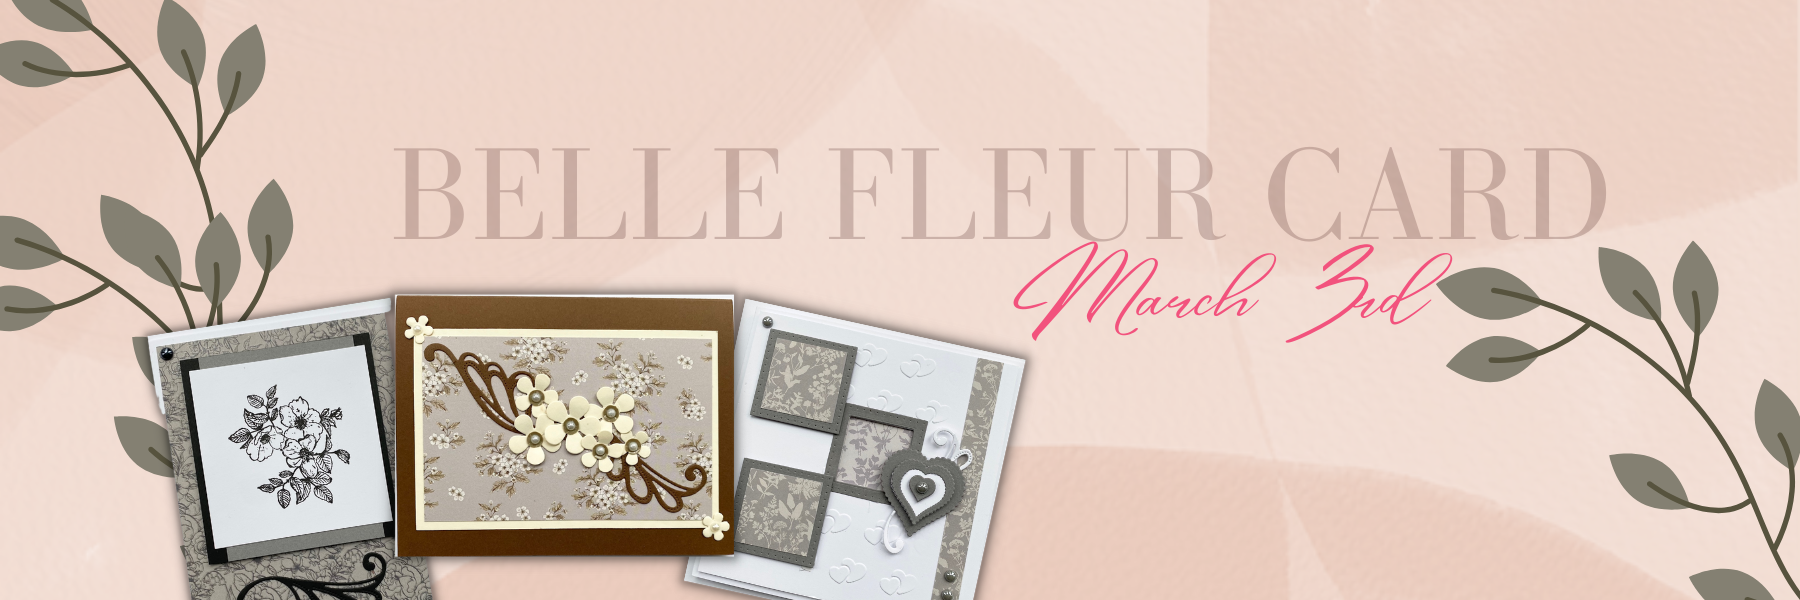 Craft Consortium "Belle Fleur" Card Class #2 - March 3rd